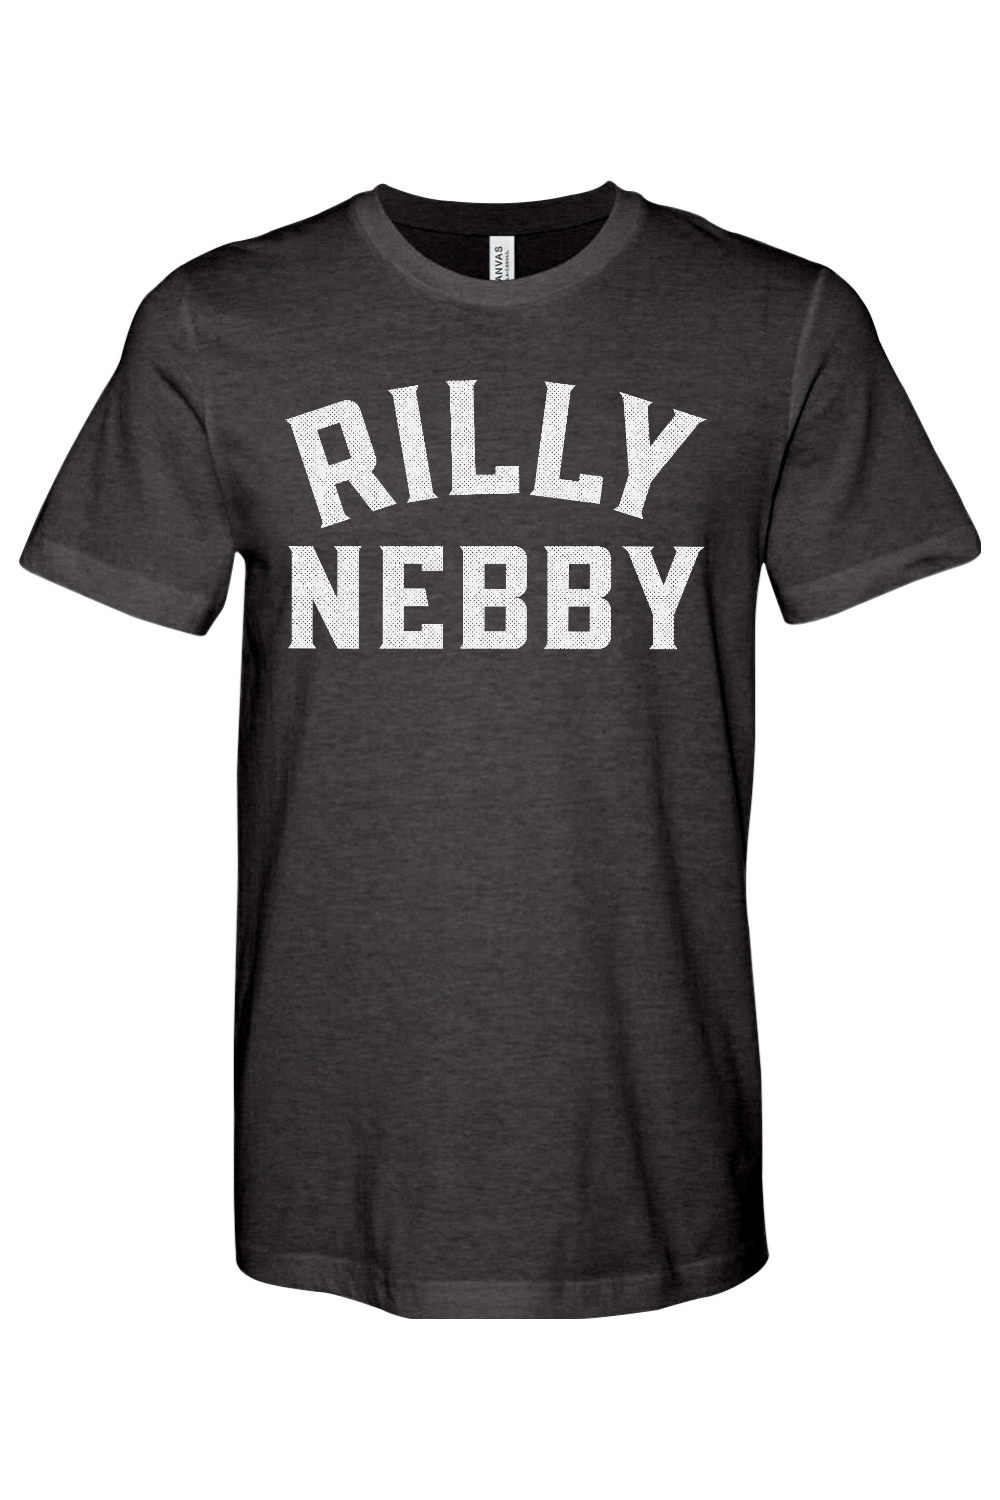 Rilly Nebby - Yinzylvania